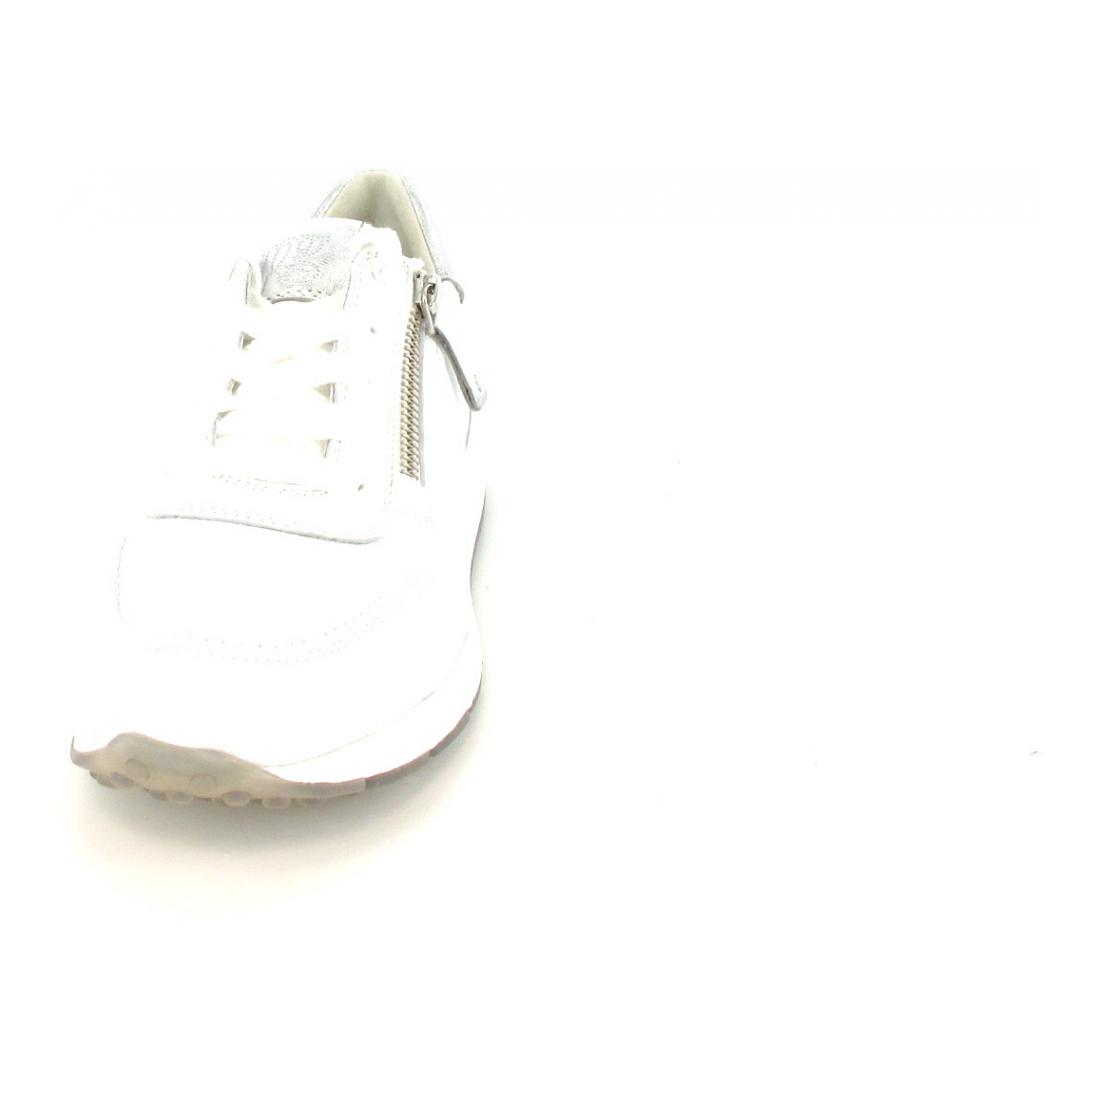 Paul Green Sneaker